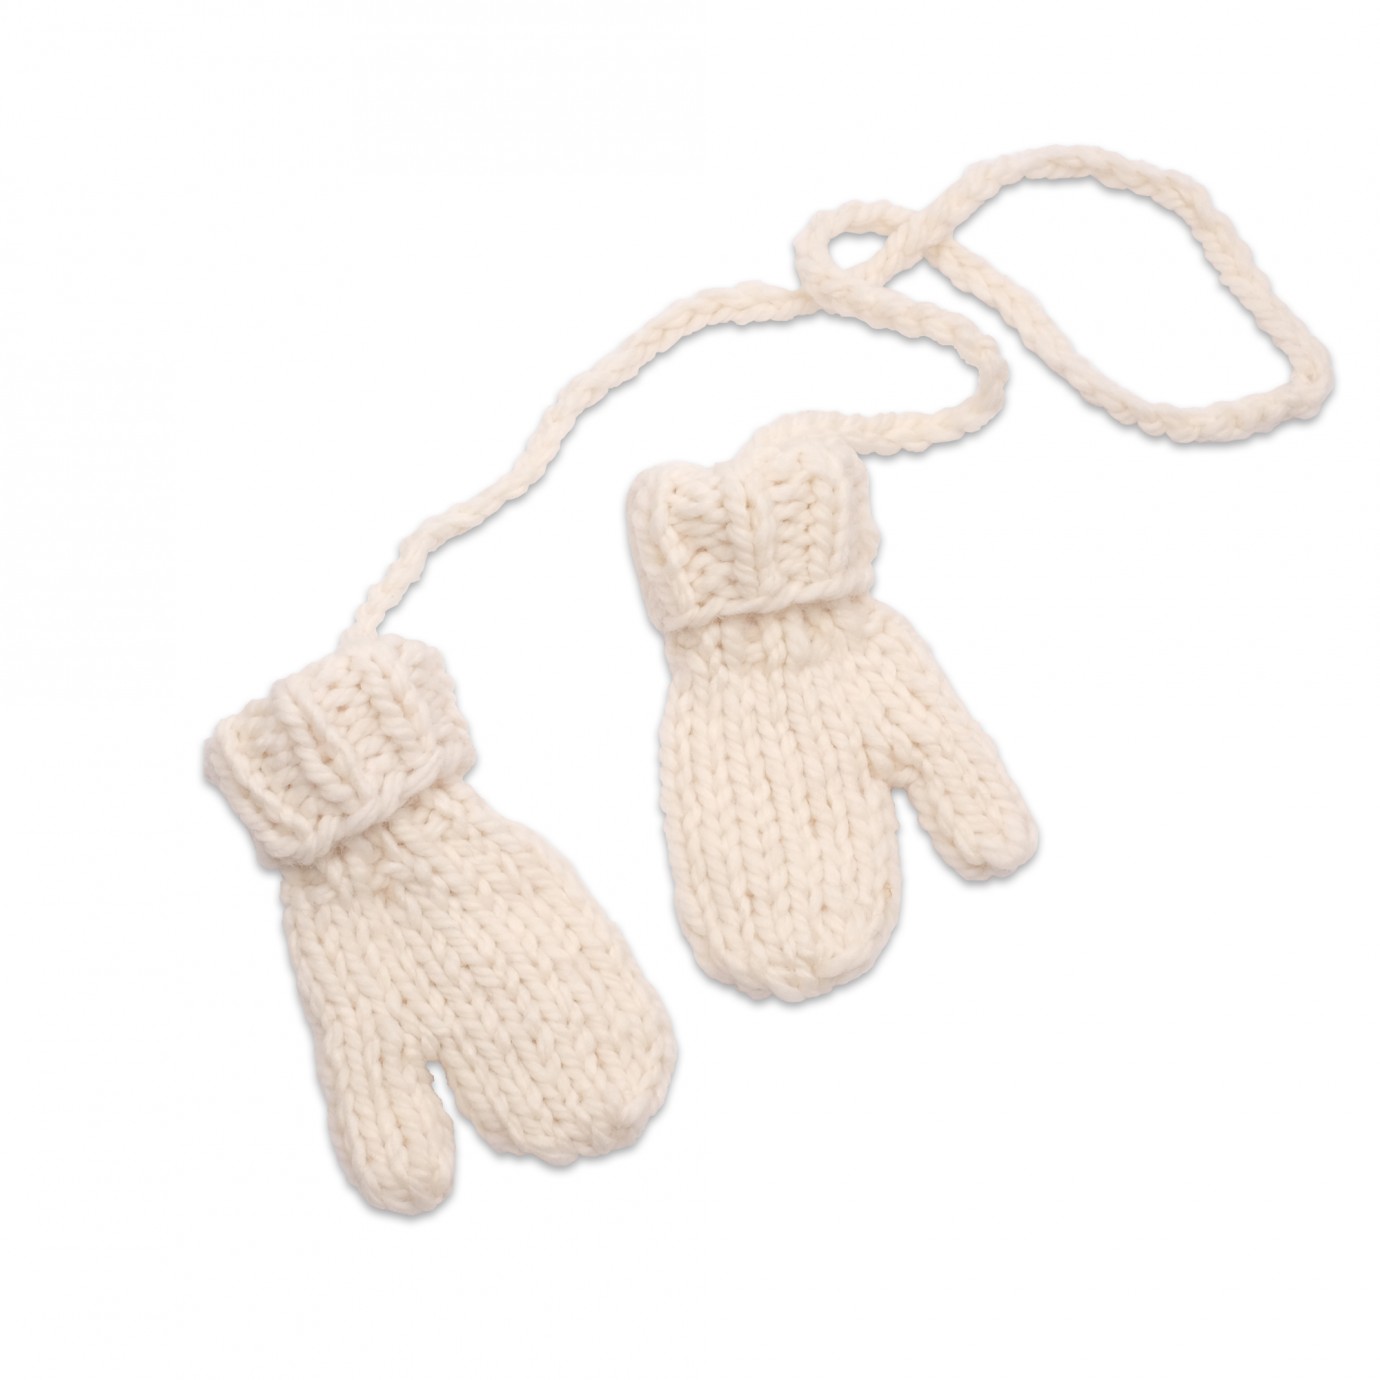 Tricoter des moufles d'enfants - Marie Claire